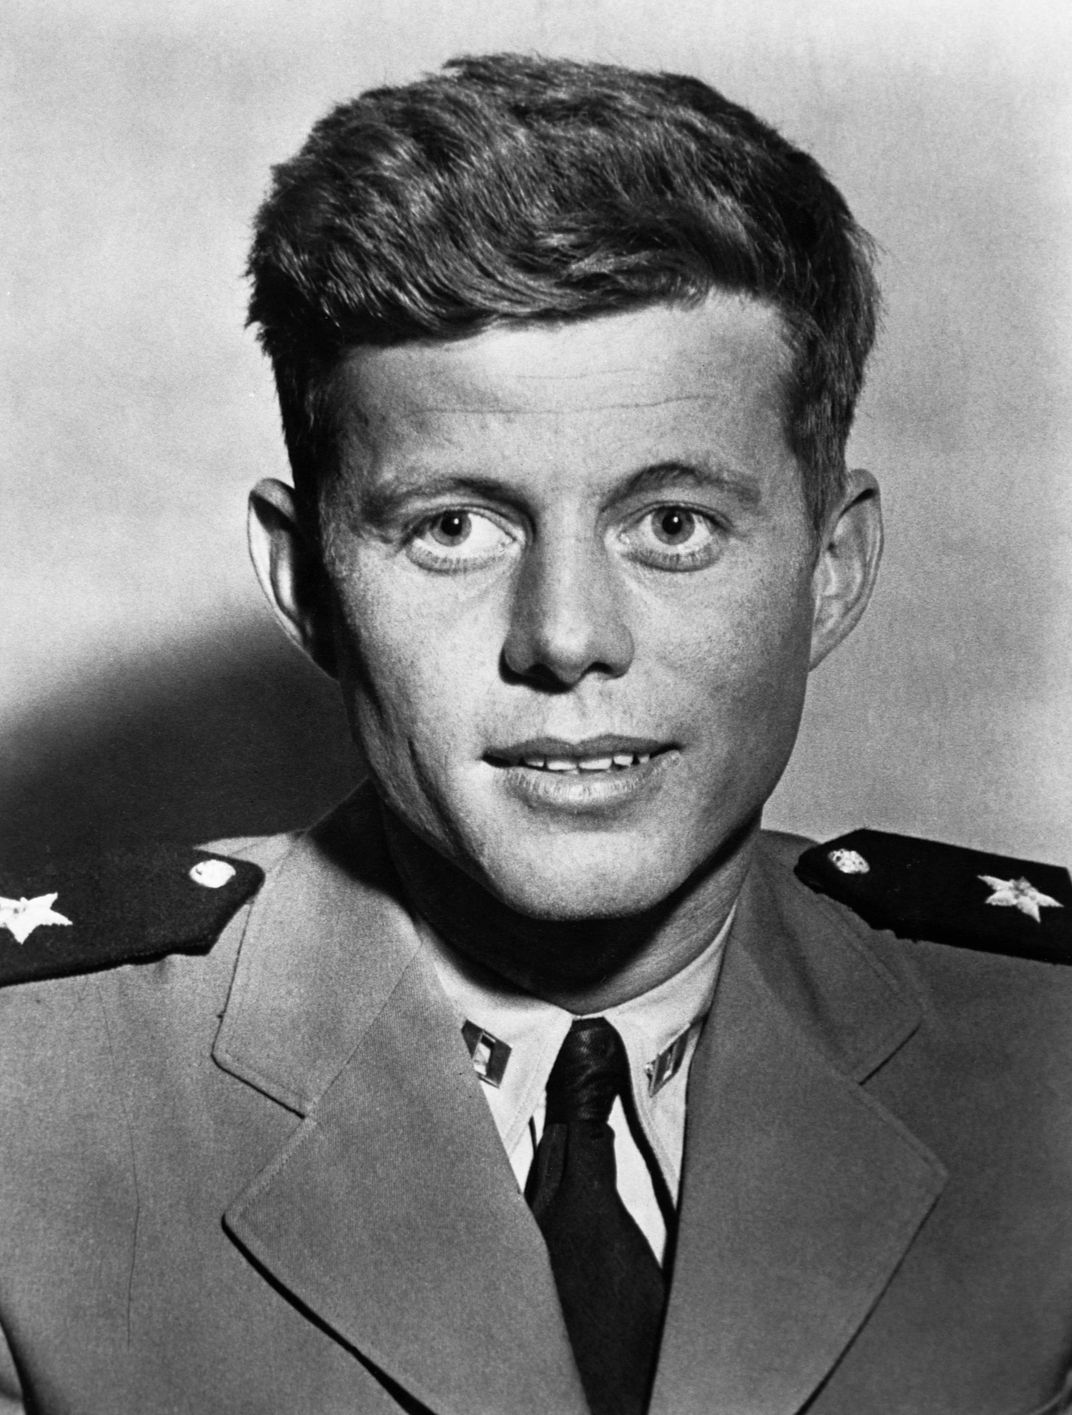 JFK as a lieutenant